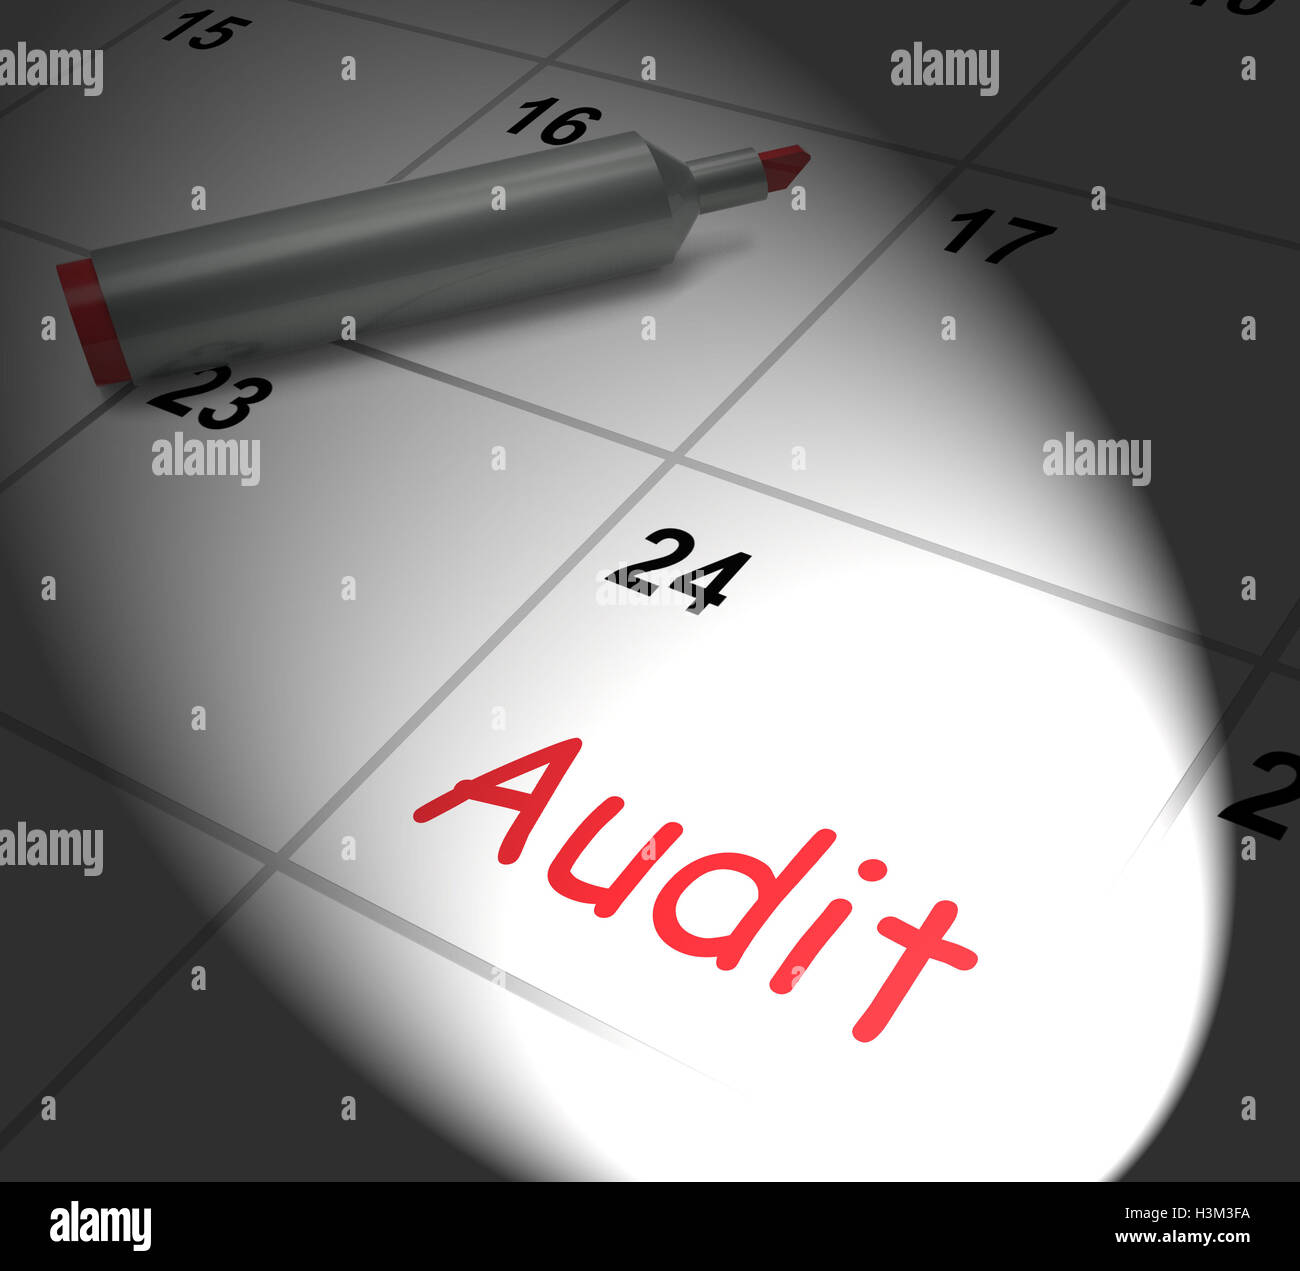 Calendario de auditoría muestra la inspección y verificación de las finanzas Foto de stock